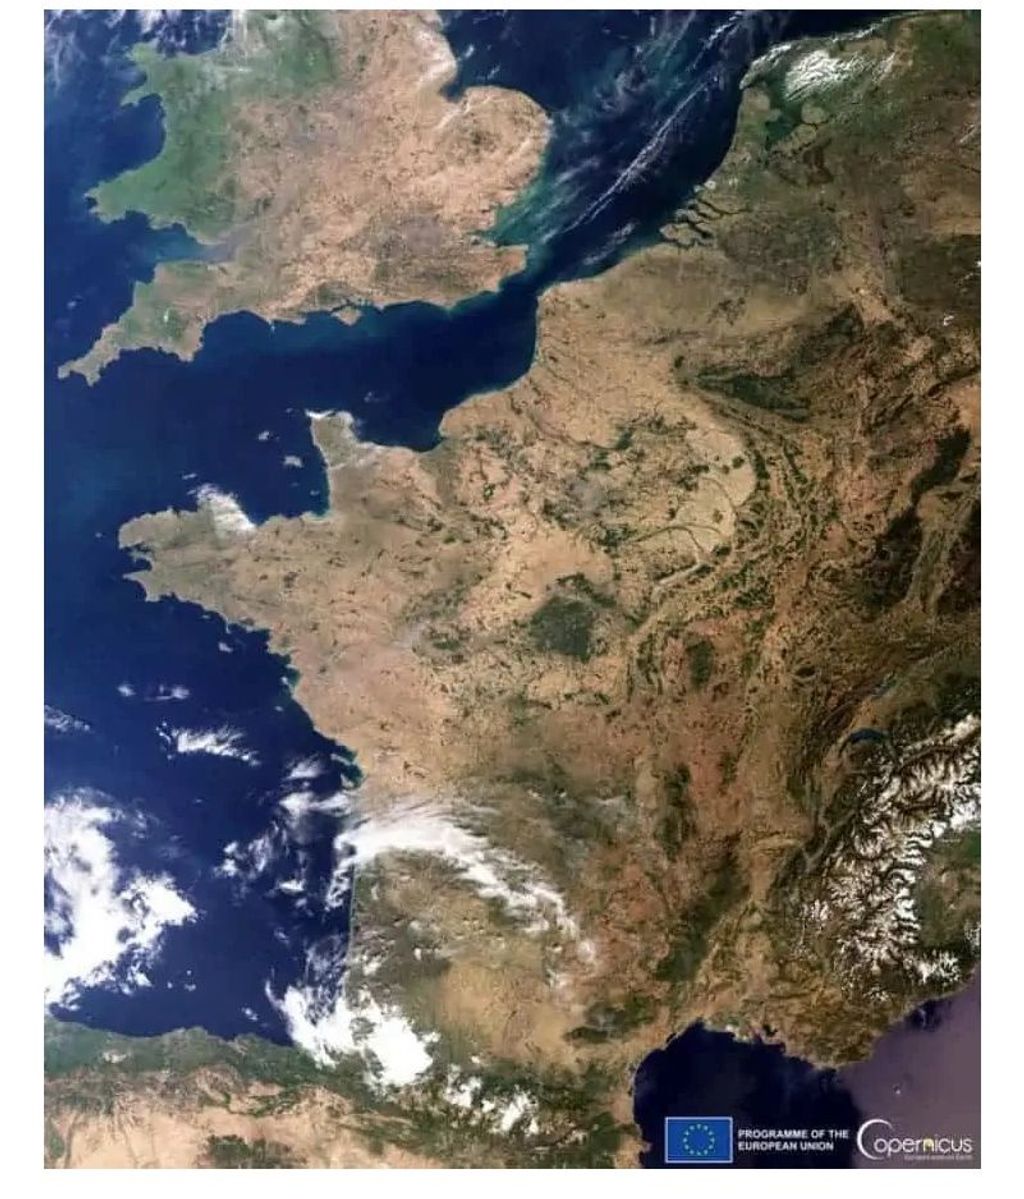 La sequía Europa occidental vista por satélite